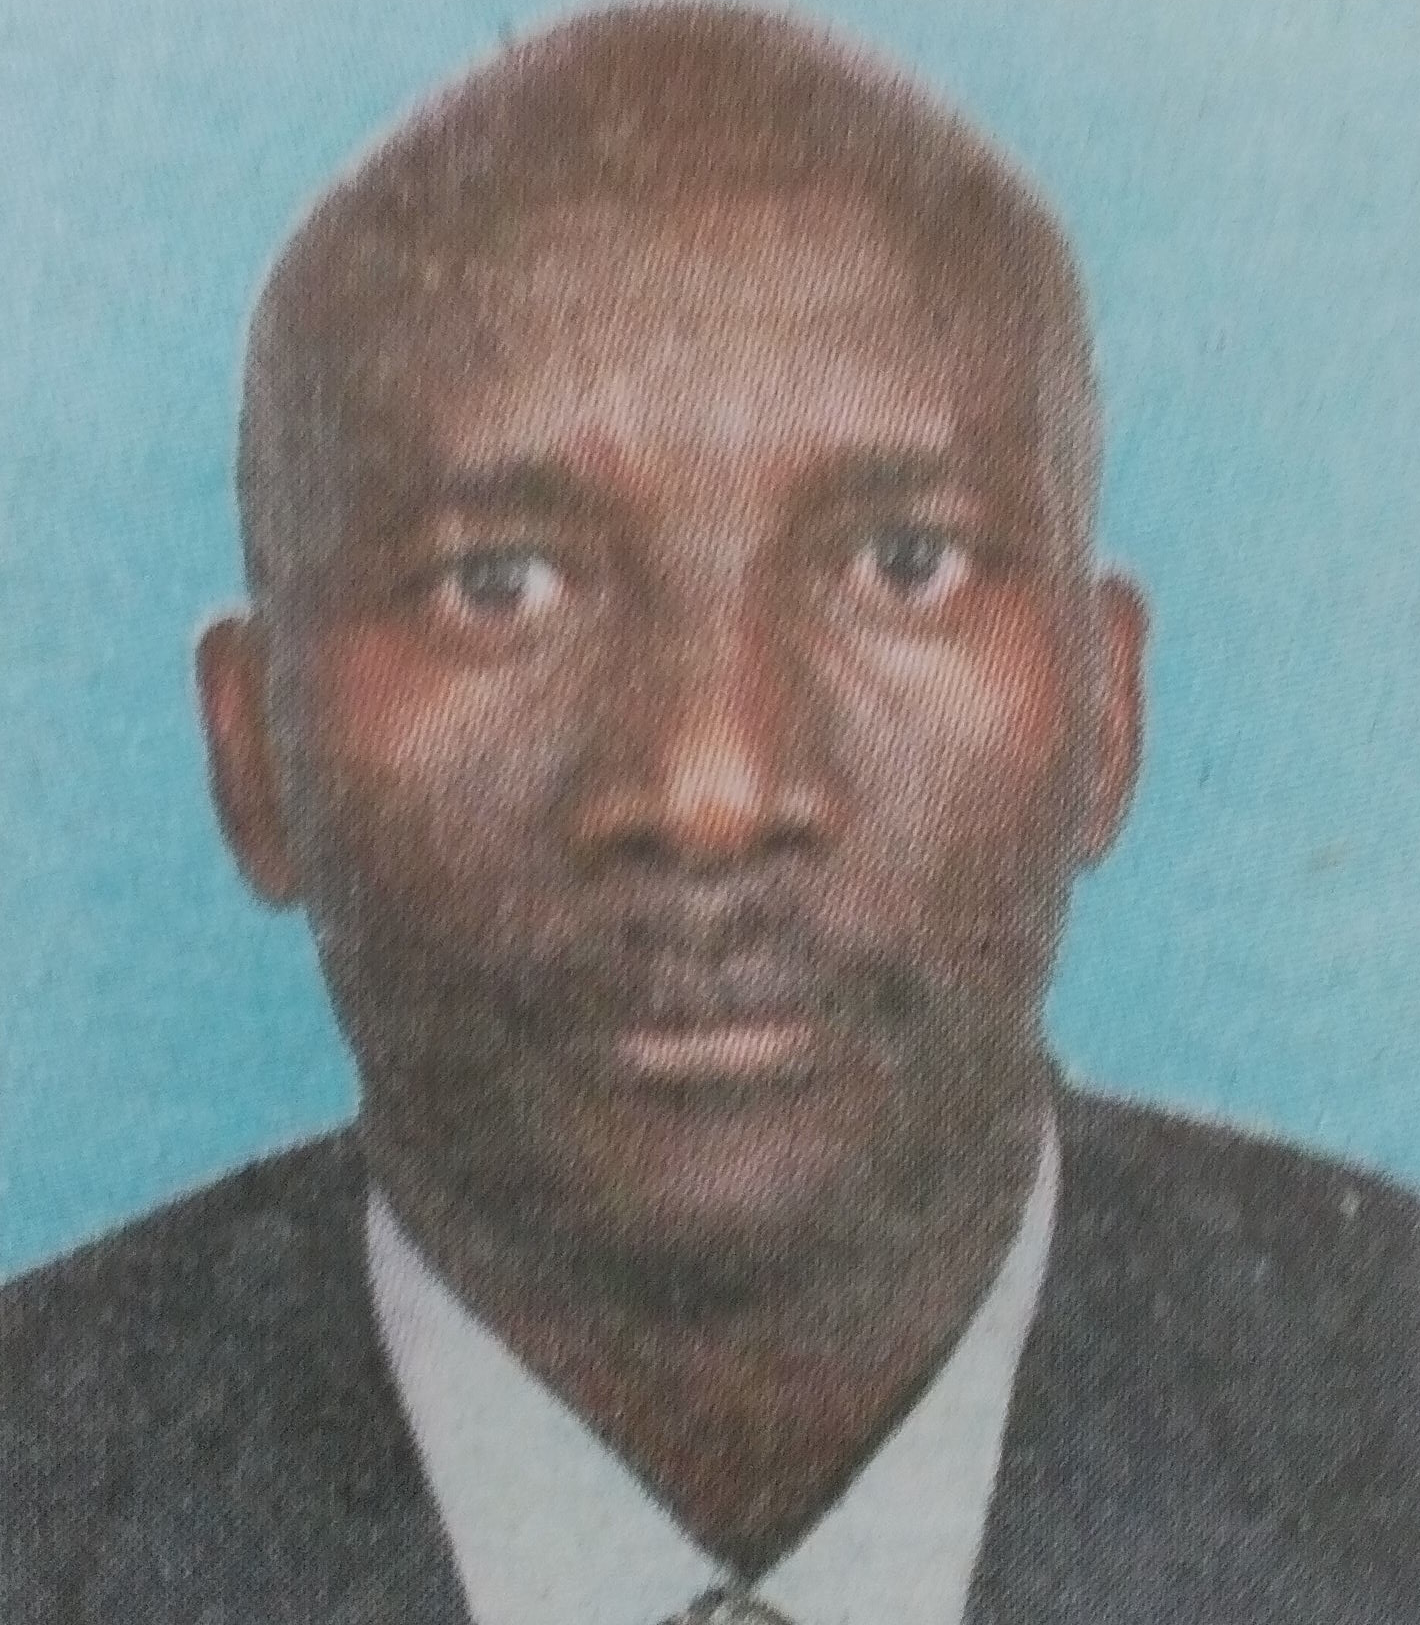 Obituary Image of Joseph Ngui Mbevi